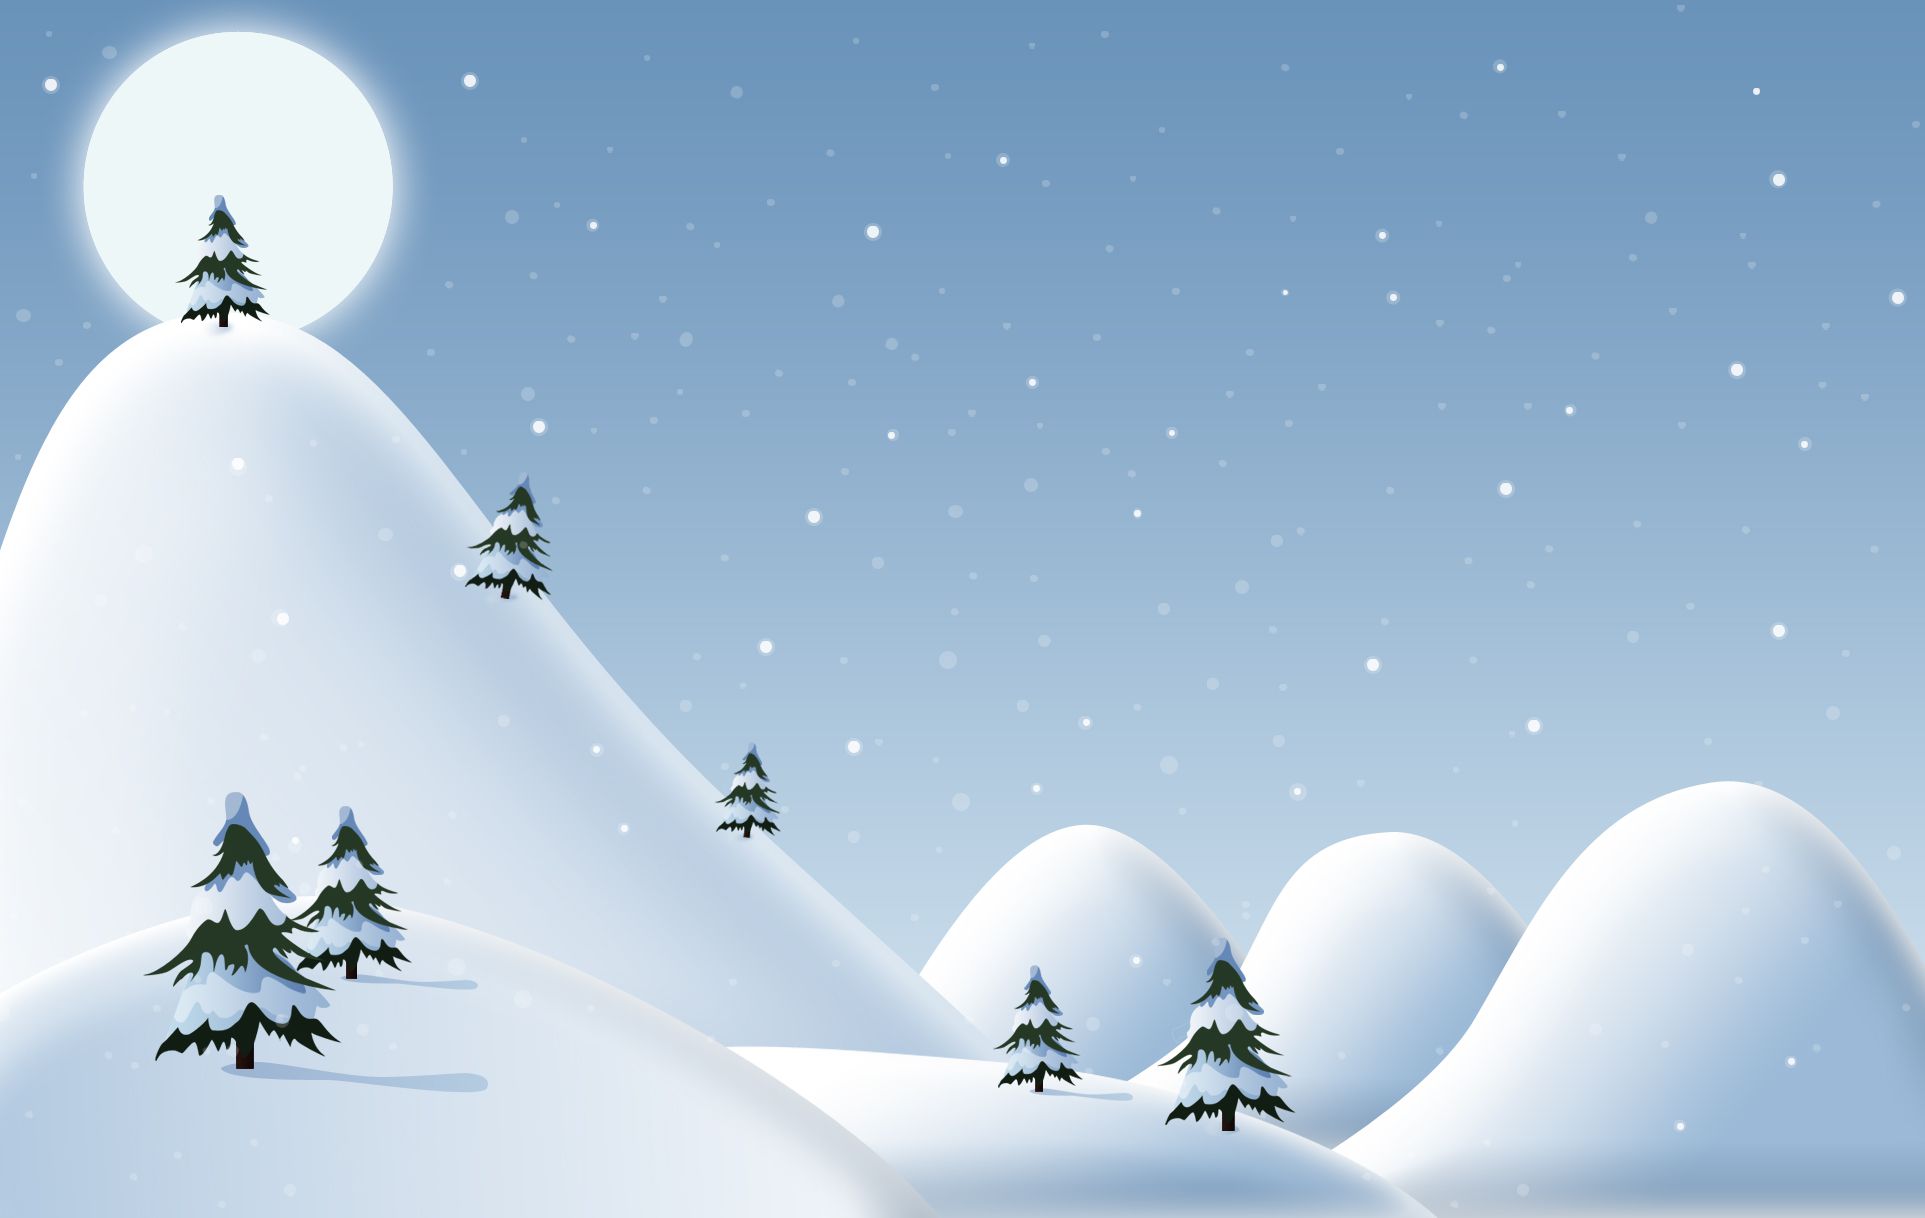 Papel de parede de Natal grátis com uma ilustração de colinas nevadas e árvores perenes